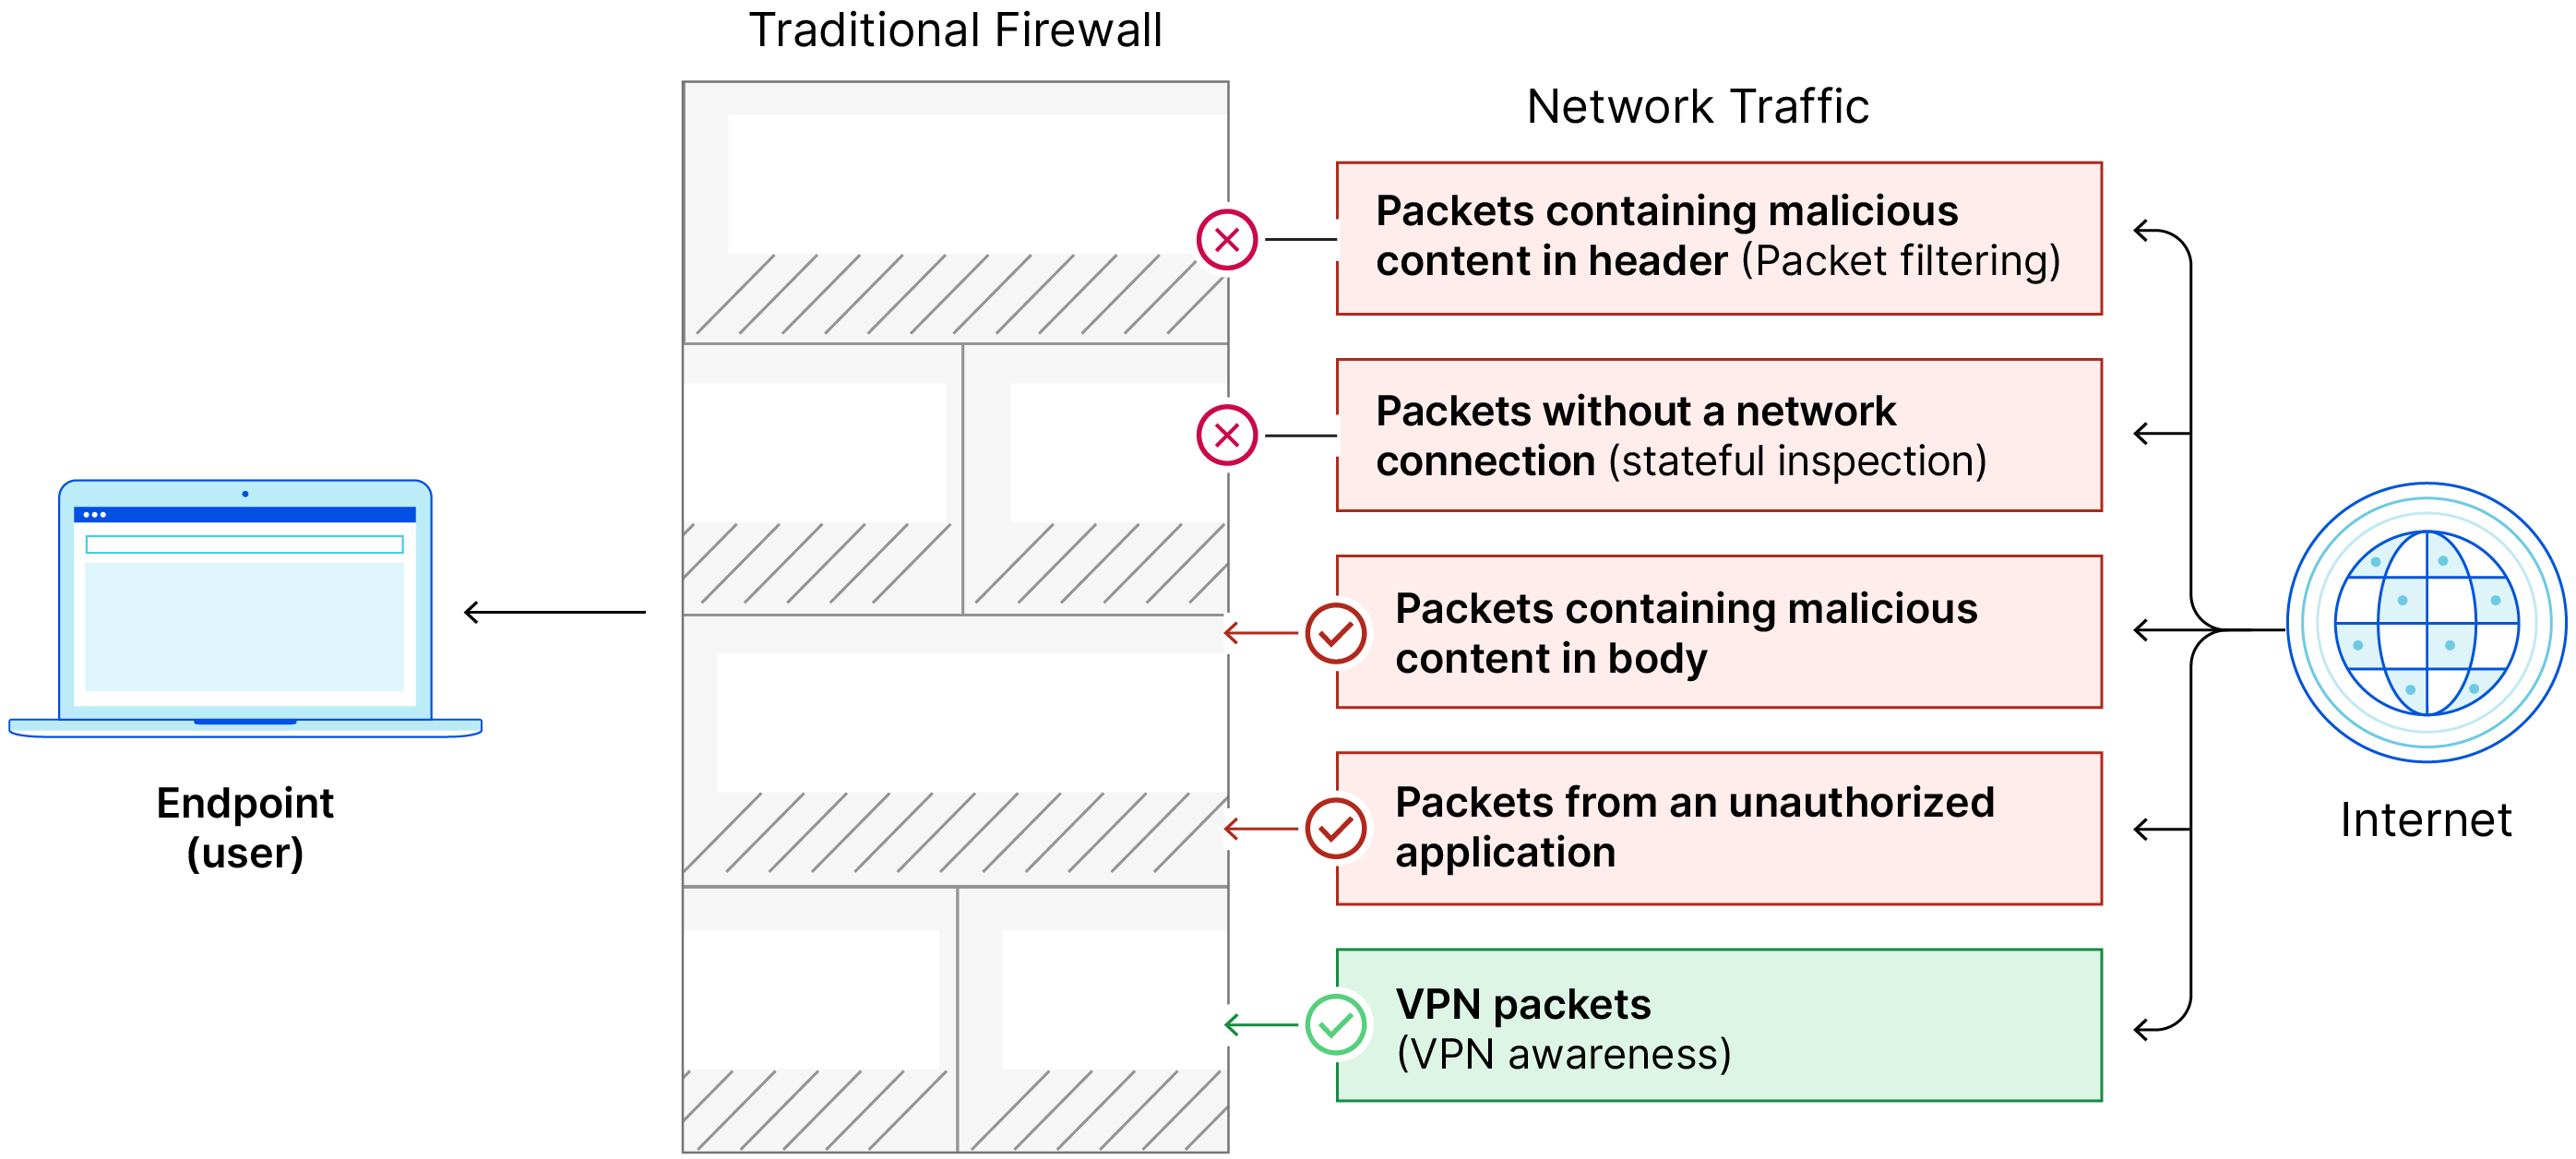 El firewall tradicional carece de las capacidades del firewall de nueva generación NGFW, deja pasar los paquetes